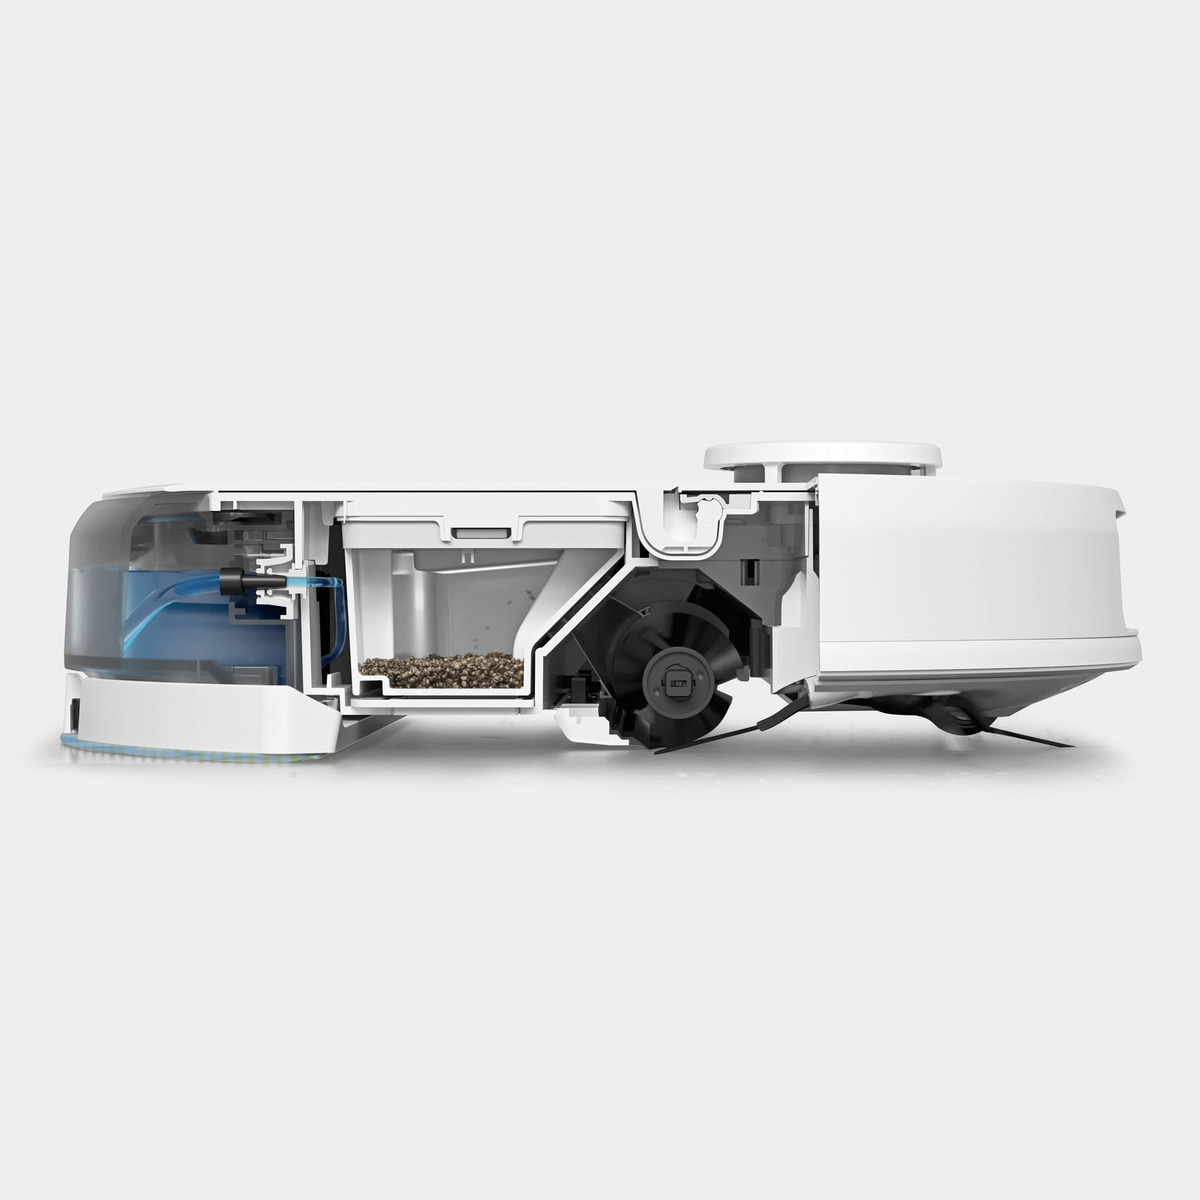 KARCHER RCV 3 - Robot Aspirateur Laveur Connecté - Navigation LIDAR précise  - 3 modes de nettoyage - Capteur de vide - Karcher